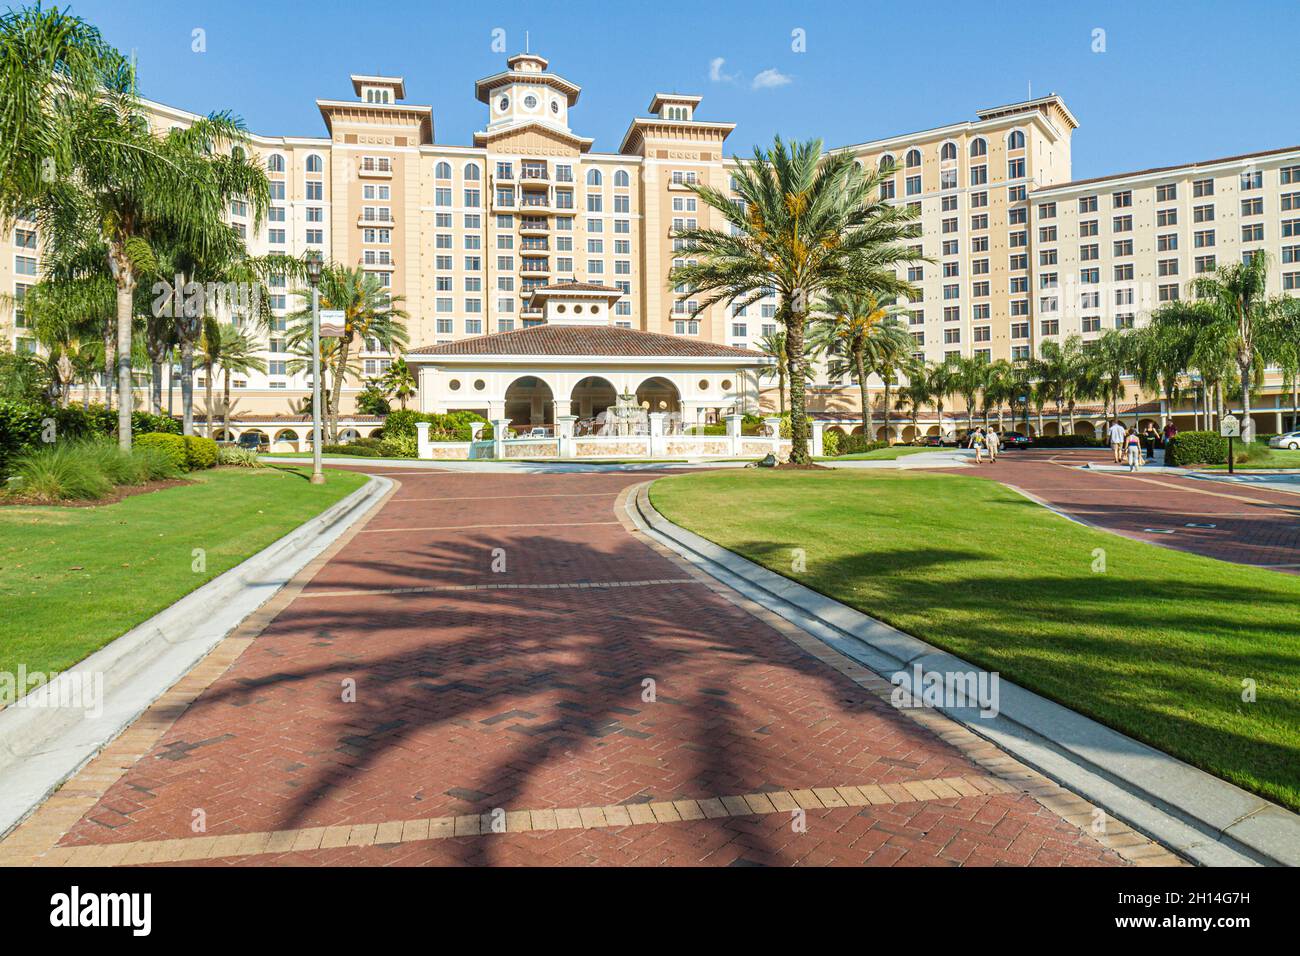 Orlando, Florida, Rosen Shingle Creek hotel fuera de la entrada exterior del complejo Foto de stock